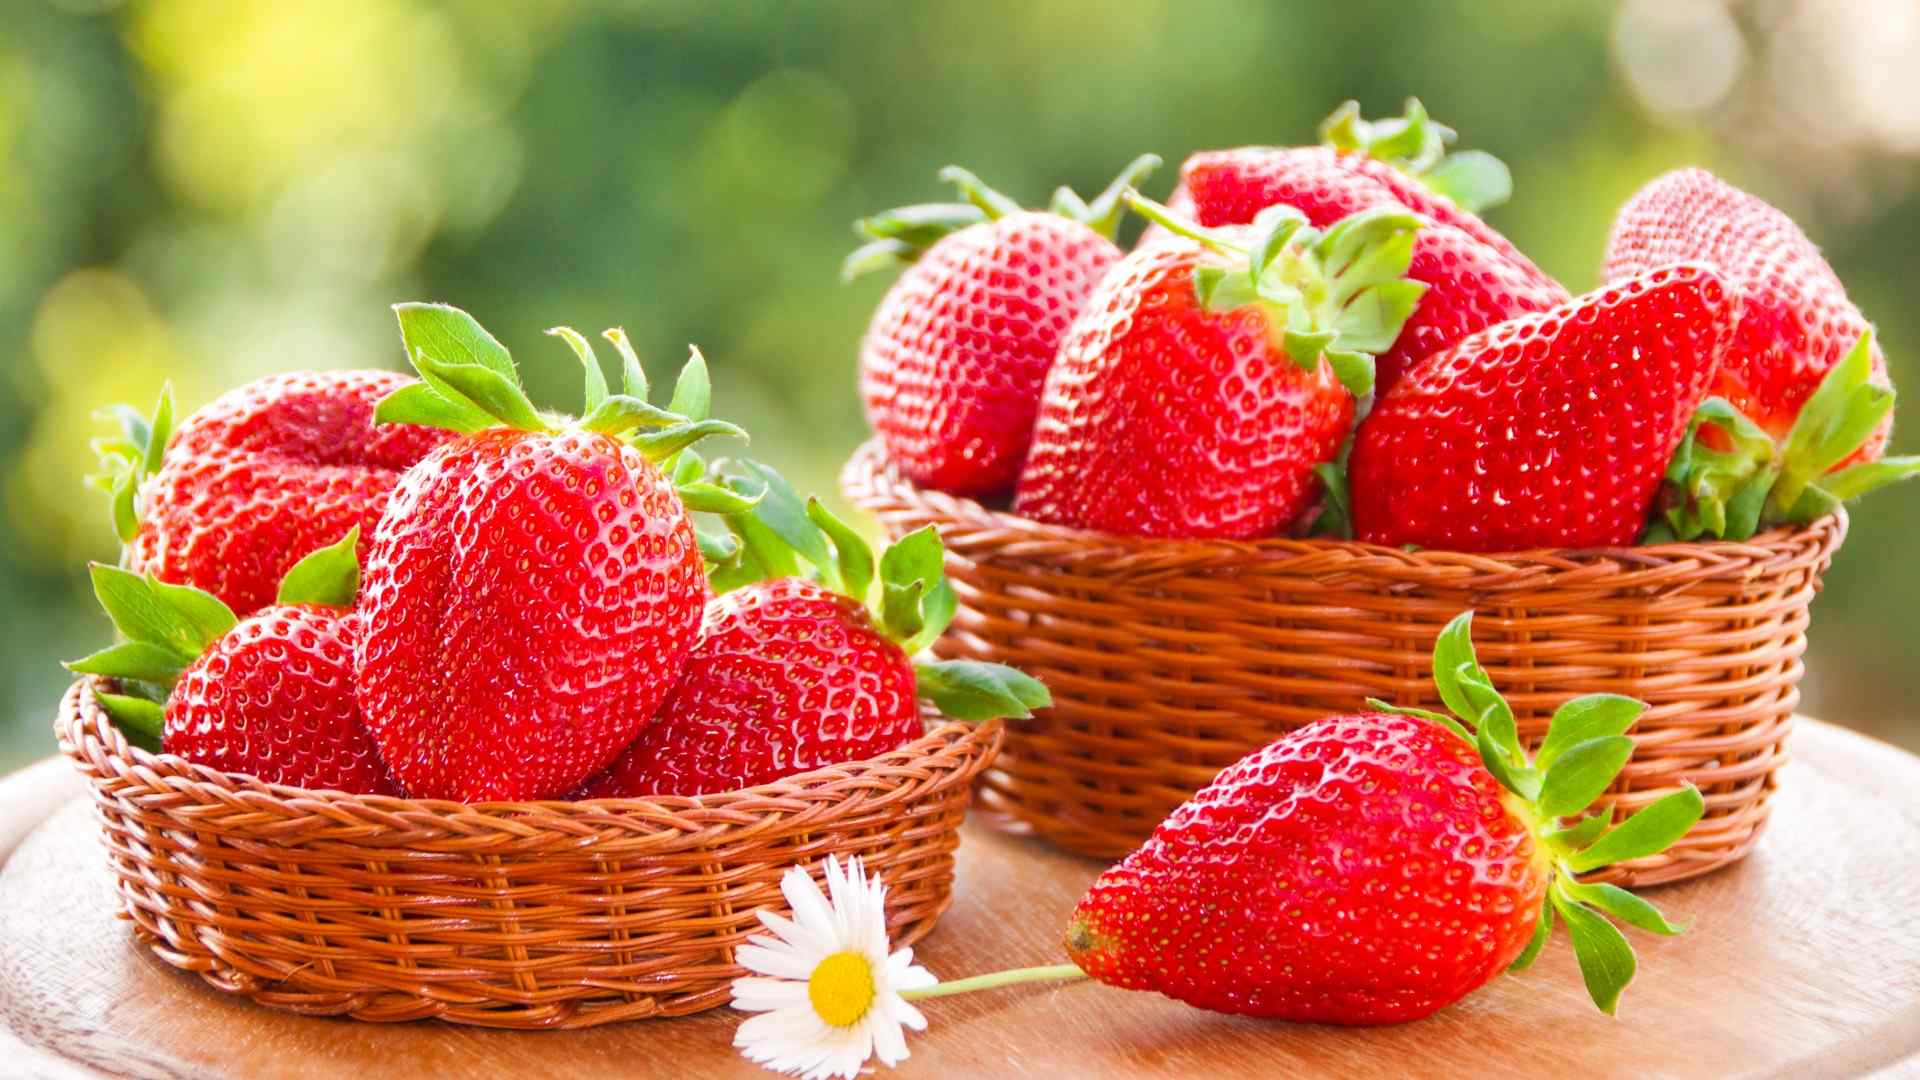 草莓 新鲜 水果 篮子 花卉 甜甜的 红草莓 桌面壁纸